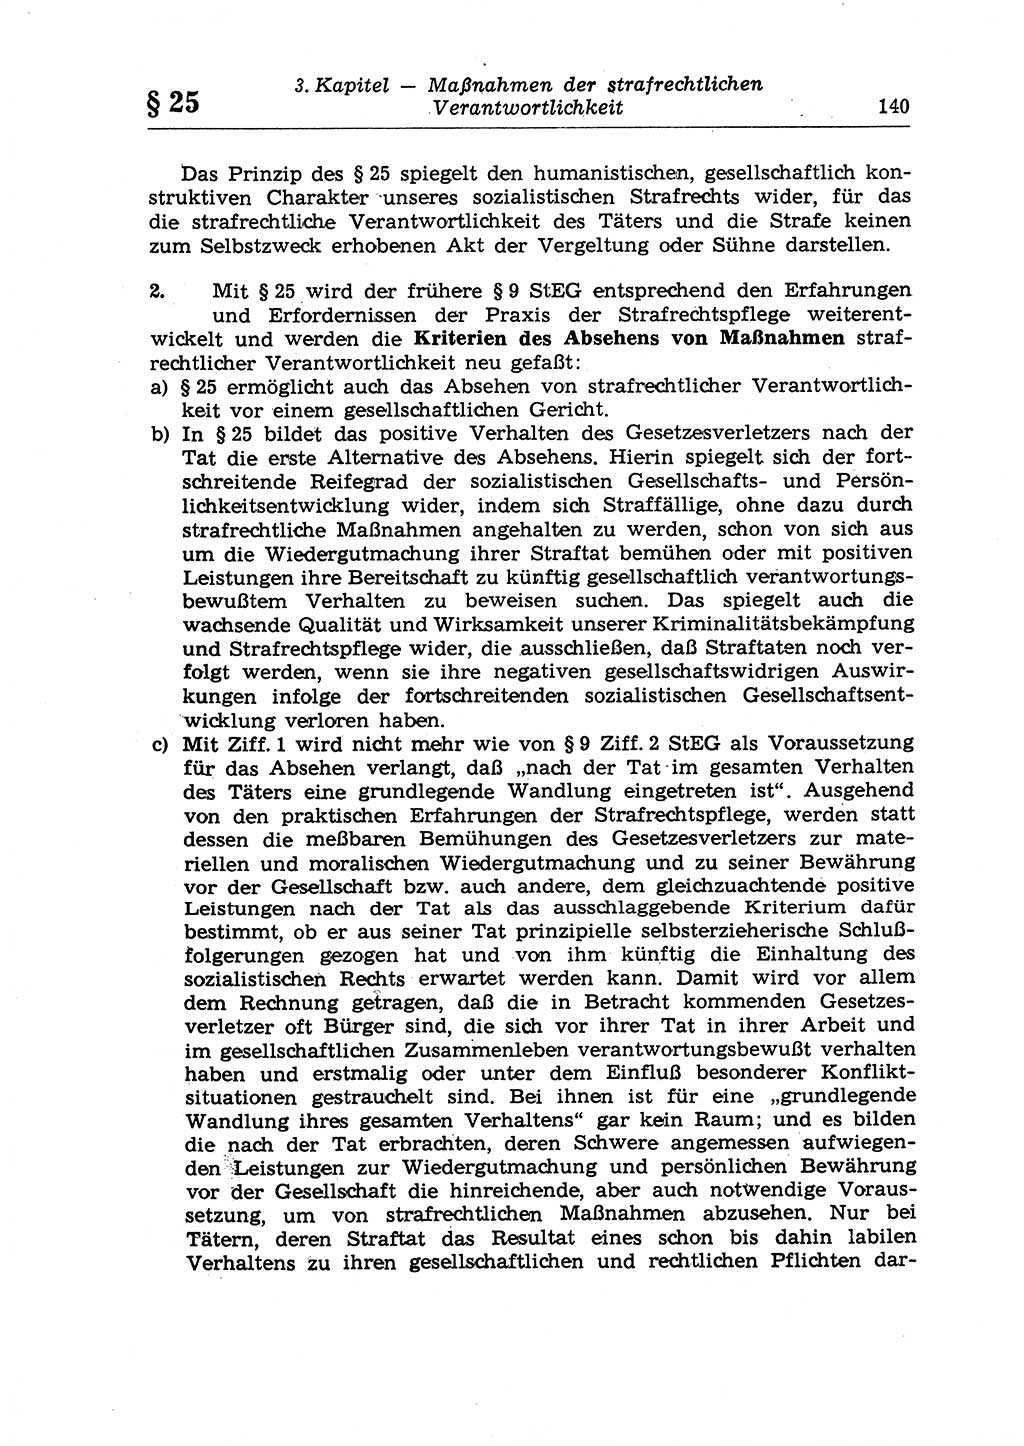 Strafrecht der Deutschen Demokratischen Republik (DDR), Lehrkommentar zum Strafgesetzbuch (StGB), Allgemeiner Teil 1970, Seite 140 (Strafr. DDR Lehrkomm. StGB AT 1970, S. 140)